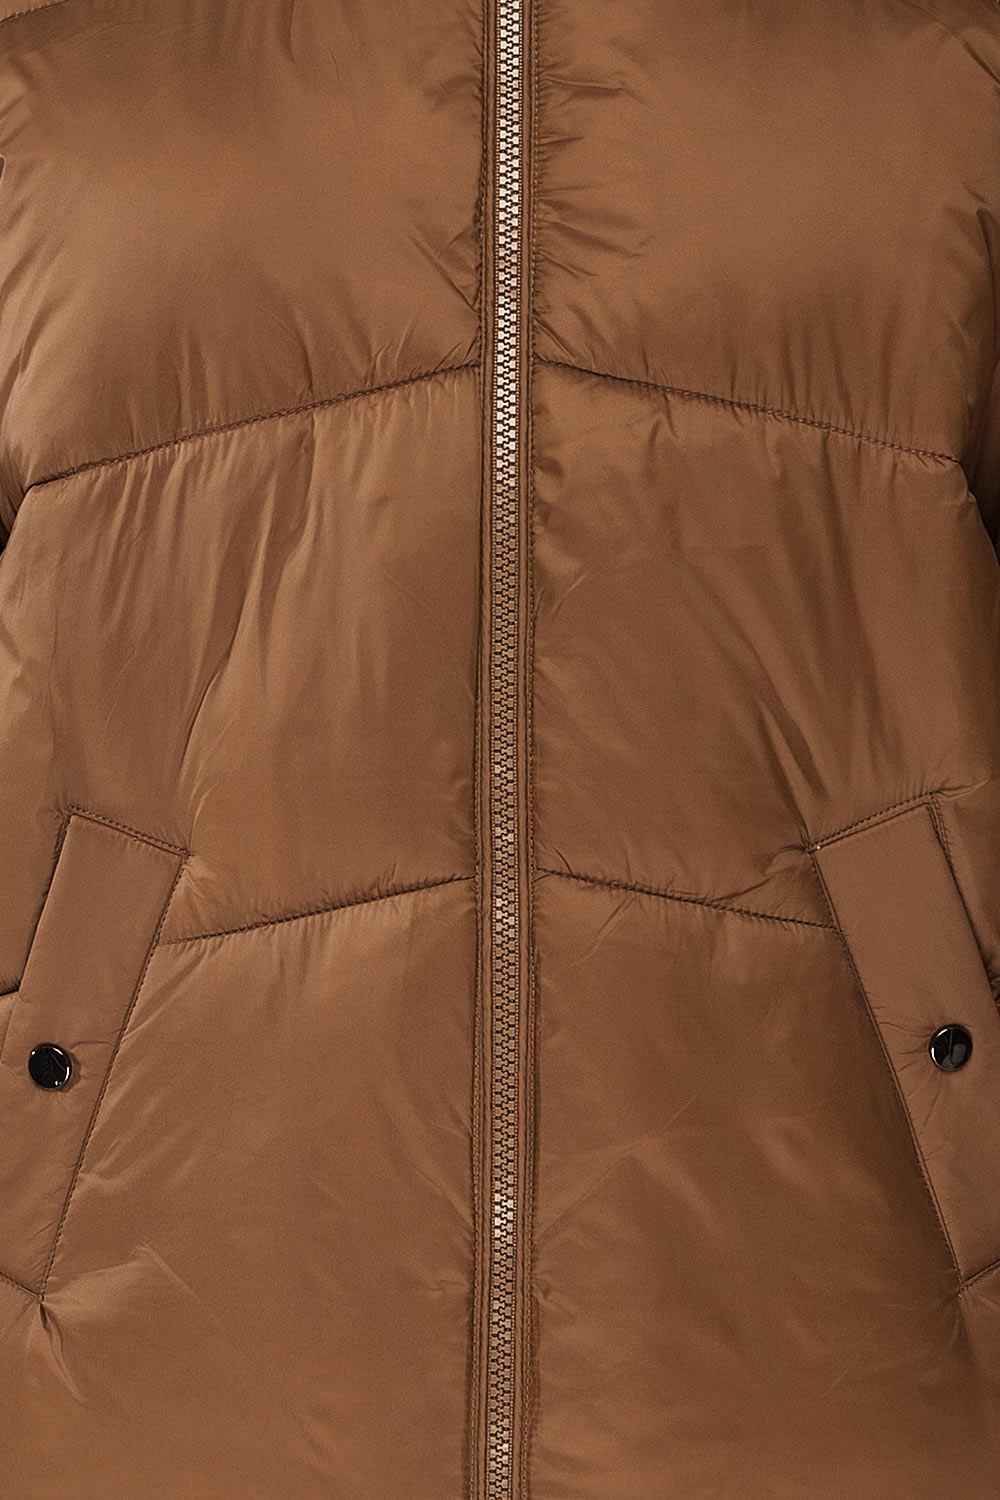 Rasdale Brown Short Puffer Coat | La petite garçonne  details